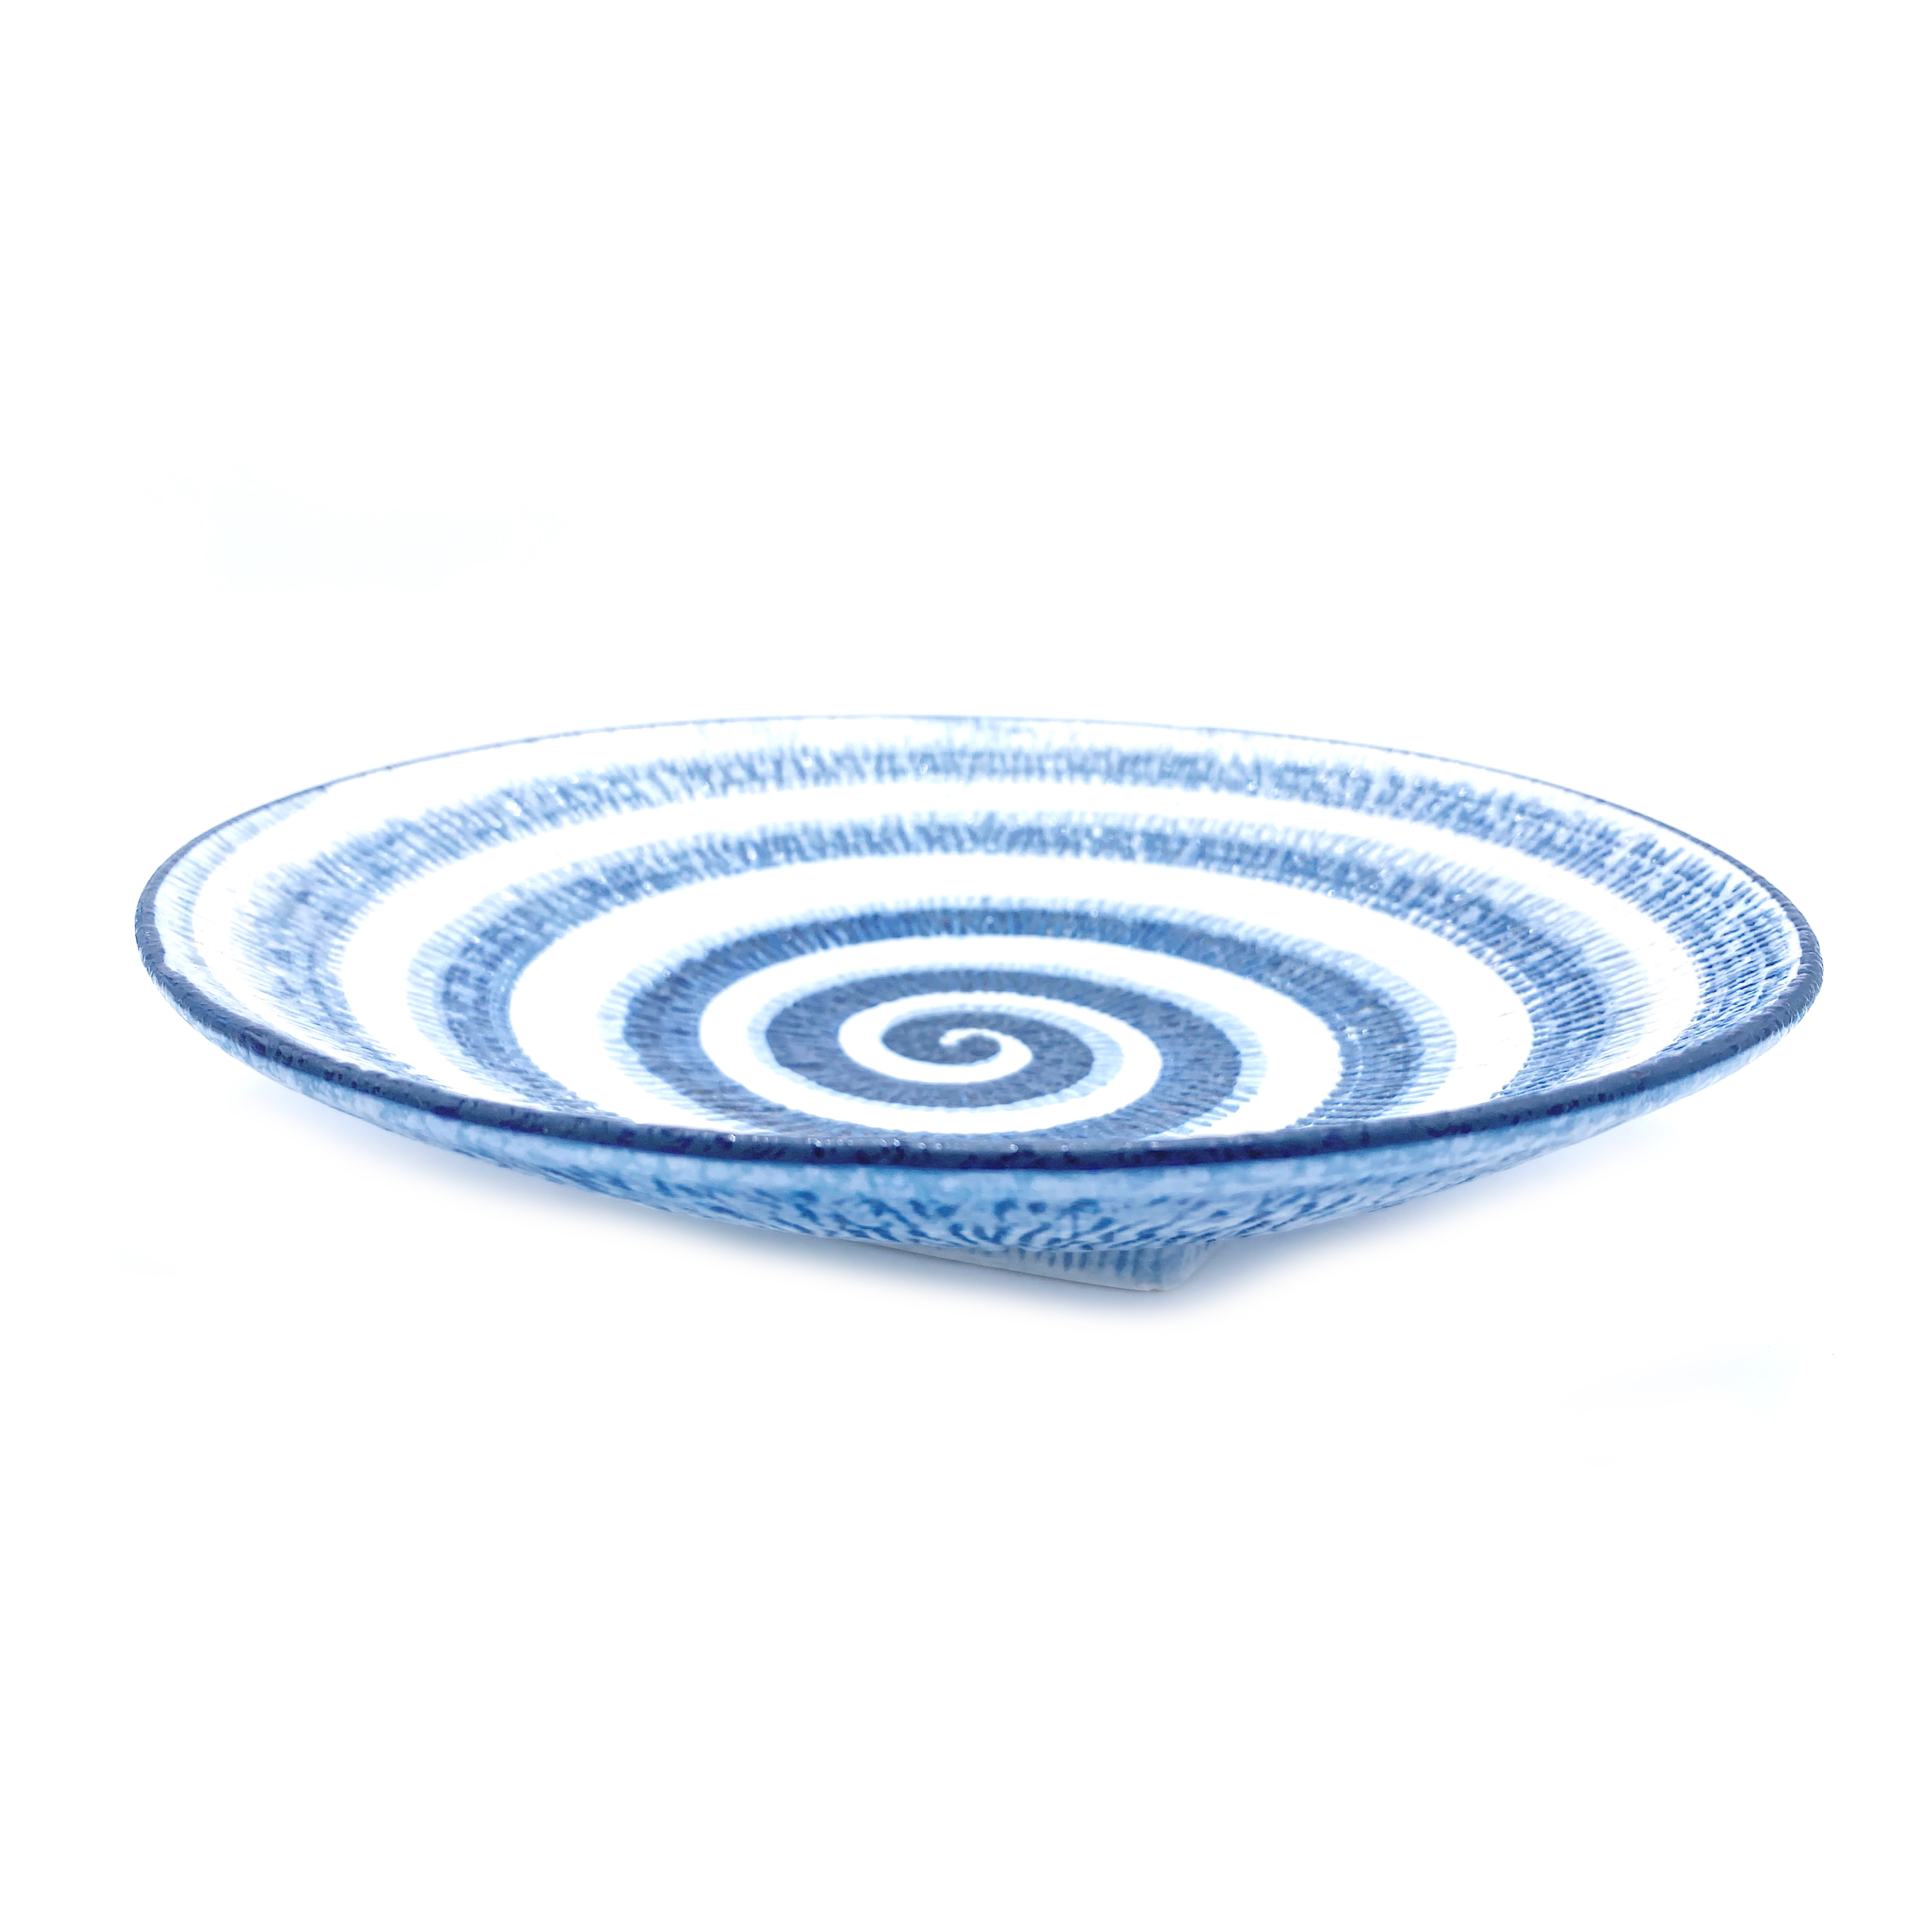 White & Blue Round Plate, Swirl